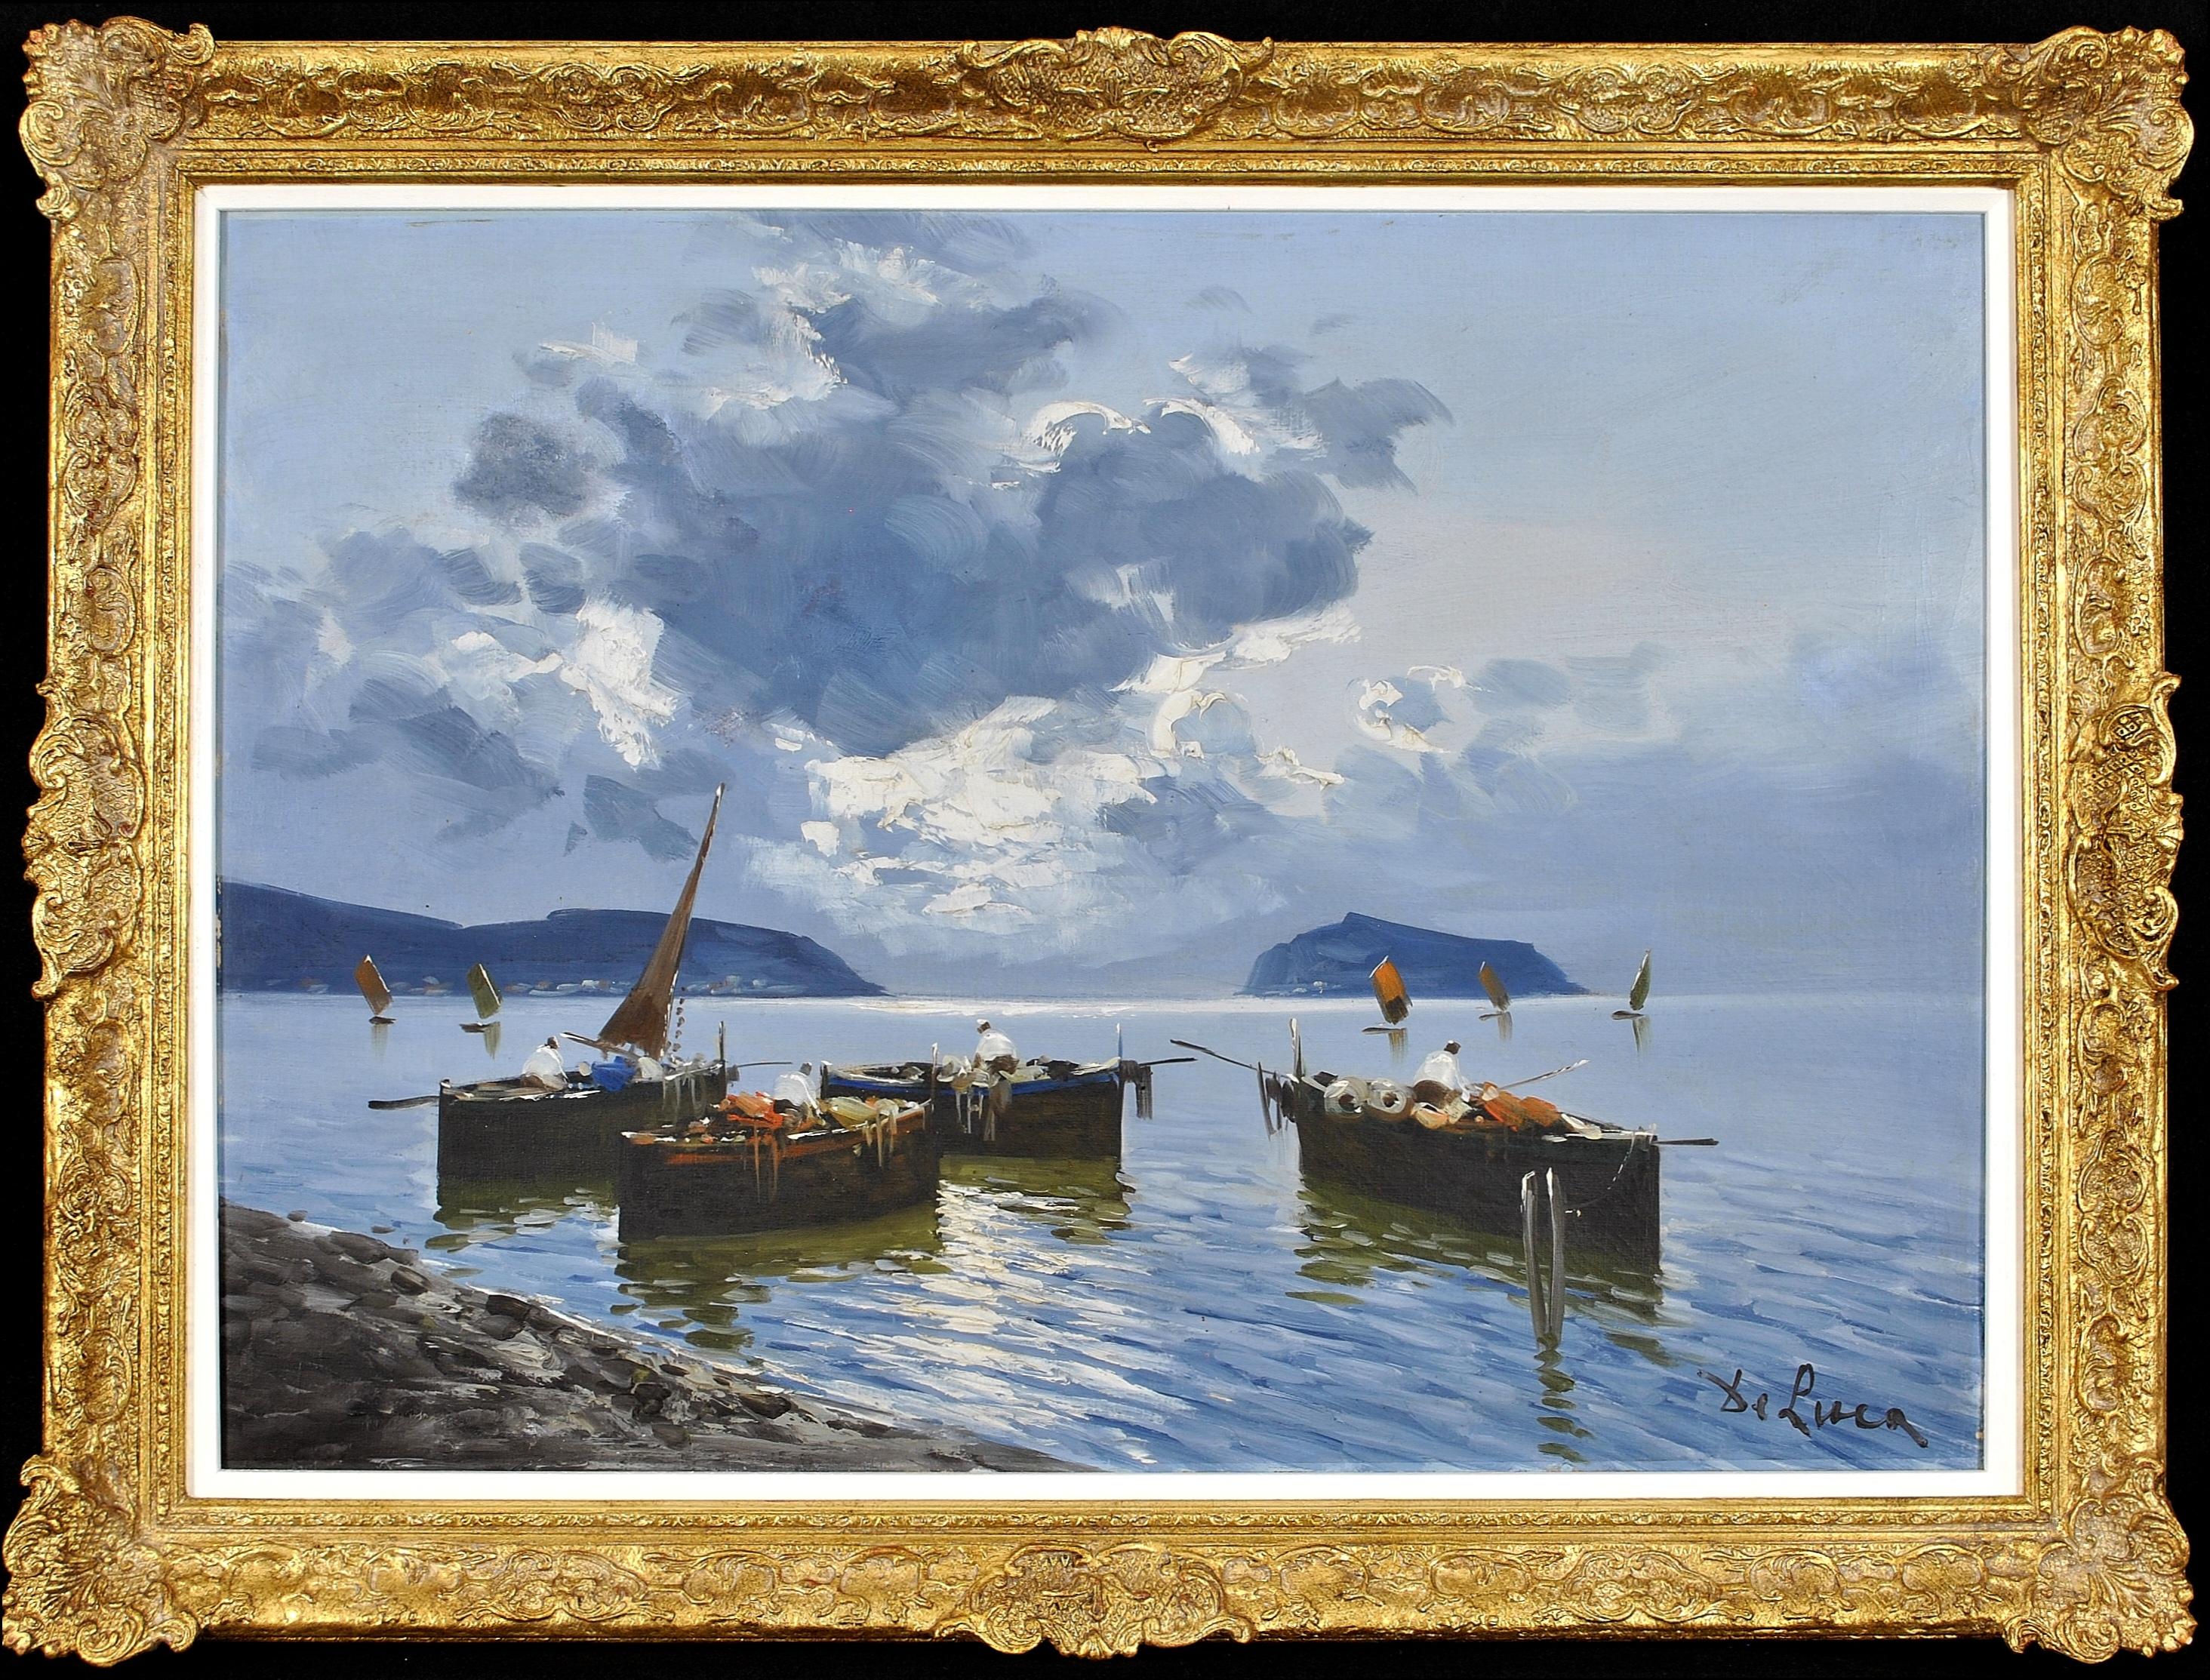 Luigi De Luca Landscape Painting – Fishermen on Bay of Naples - Großes italienisches impressionistisches Meereslandschaftsgemälde, Ölgemälde